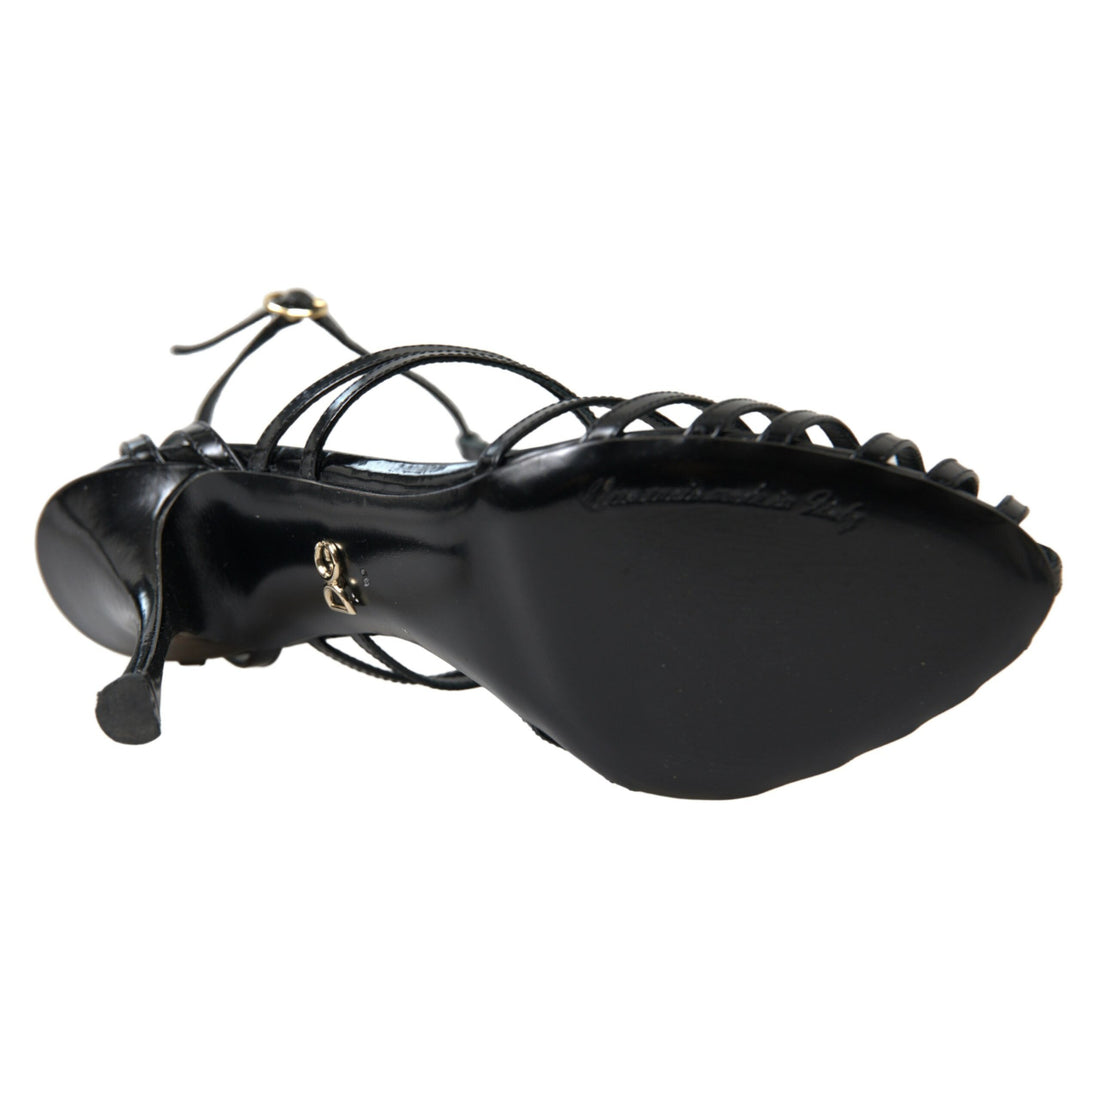 Dolce & Gabbana Black Stiletto High Heels Sandals